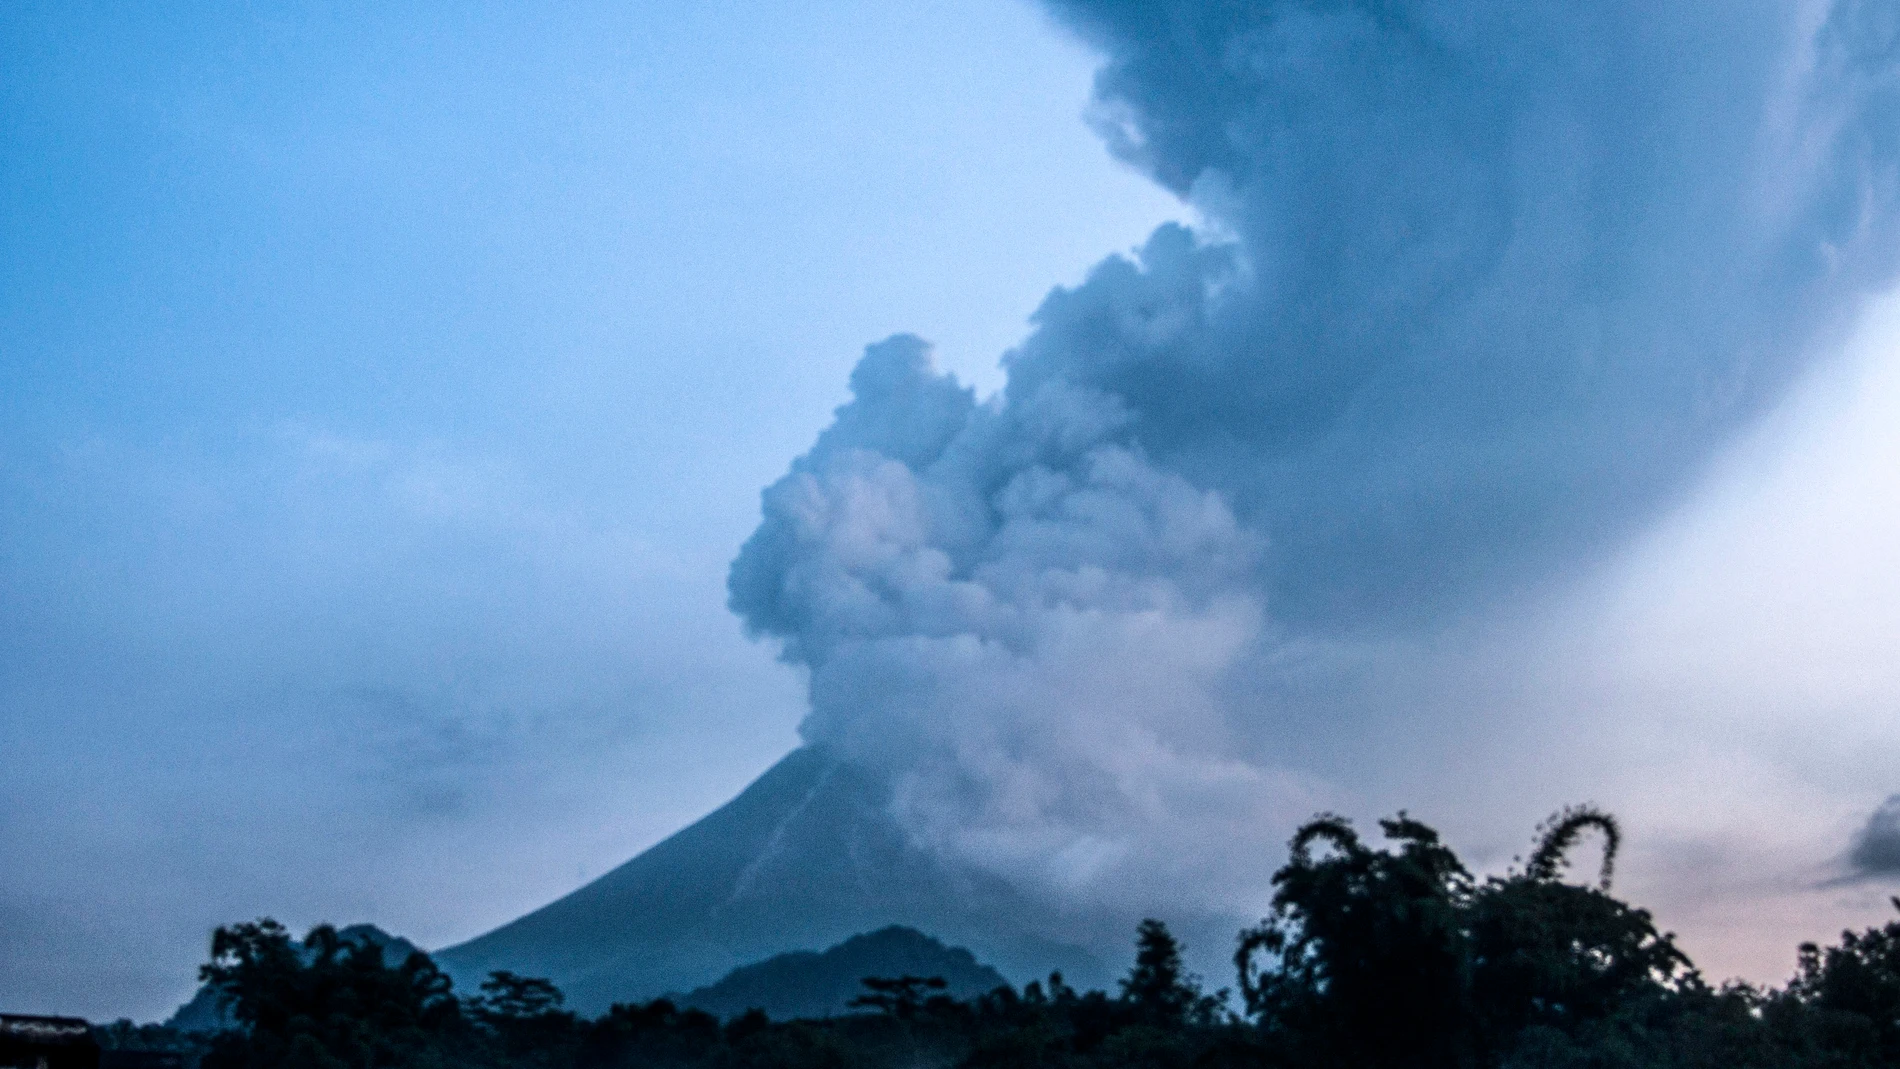 Mount Merapi eruption in Indonesia